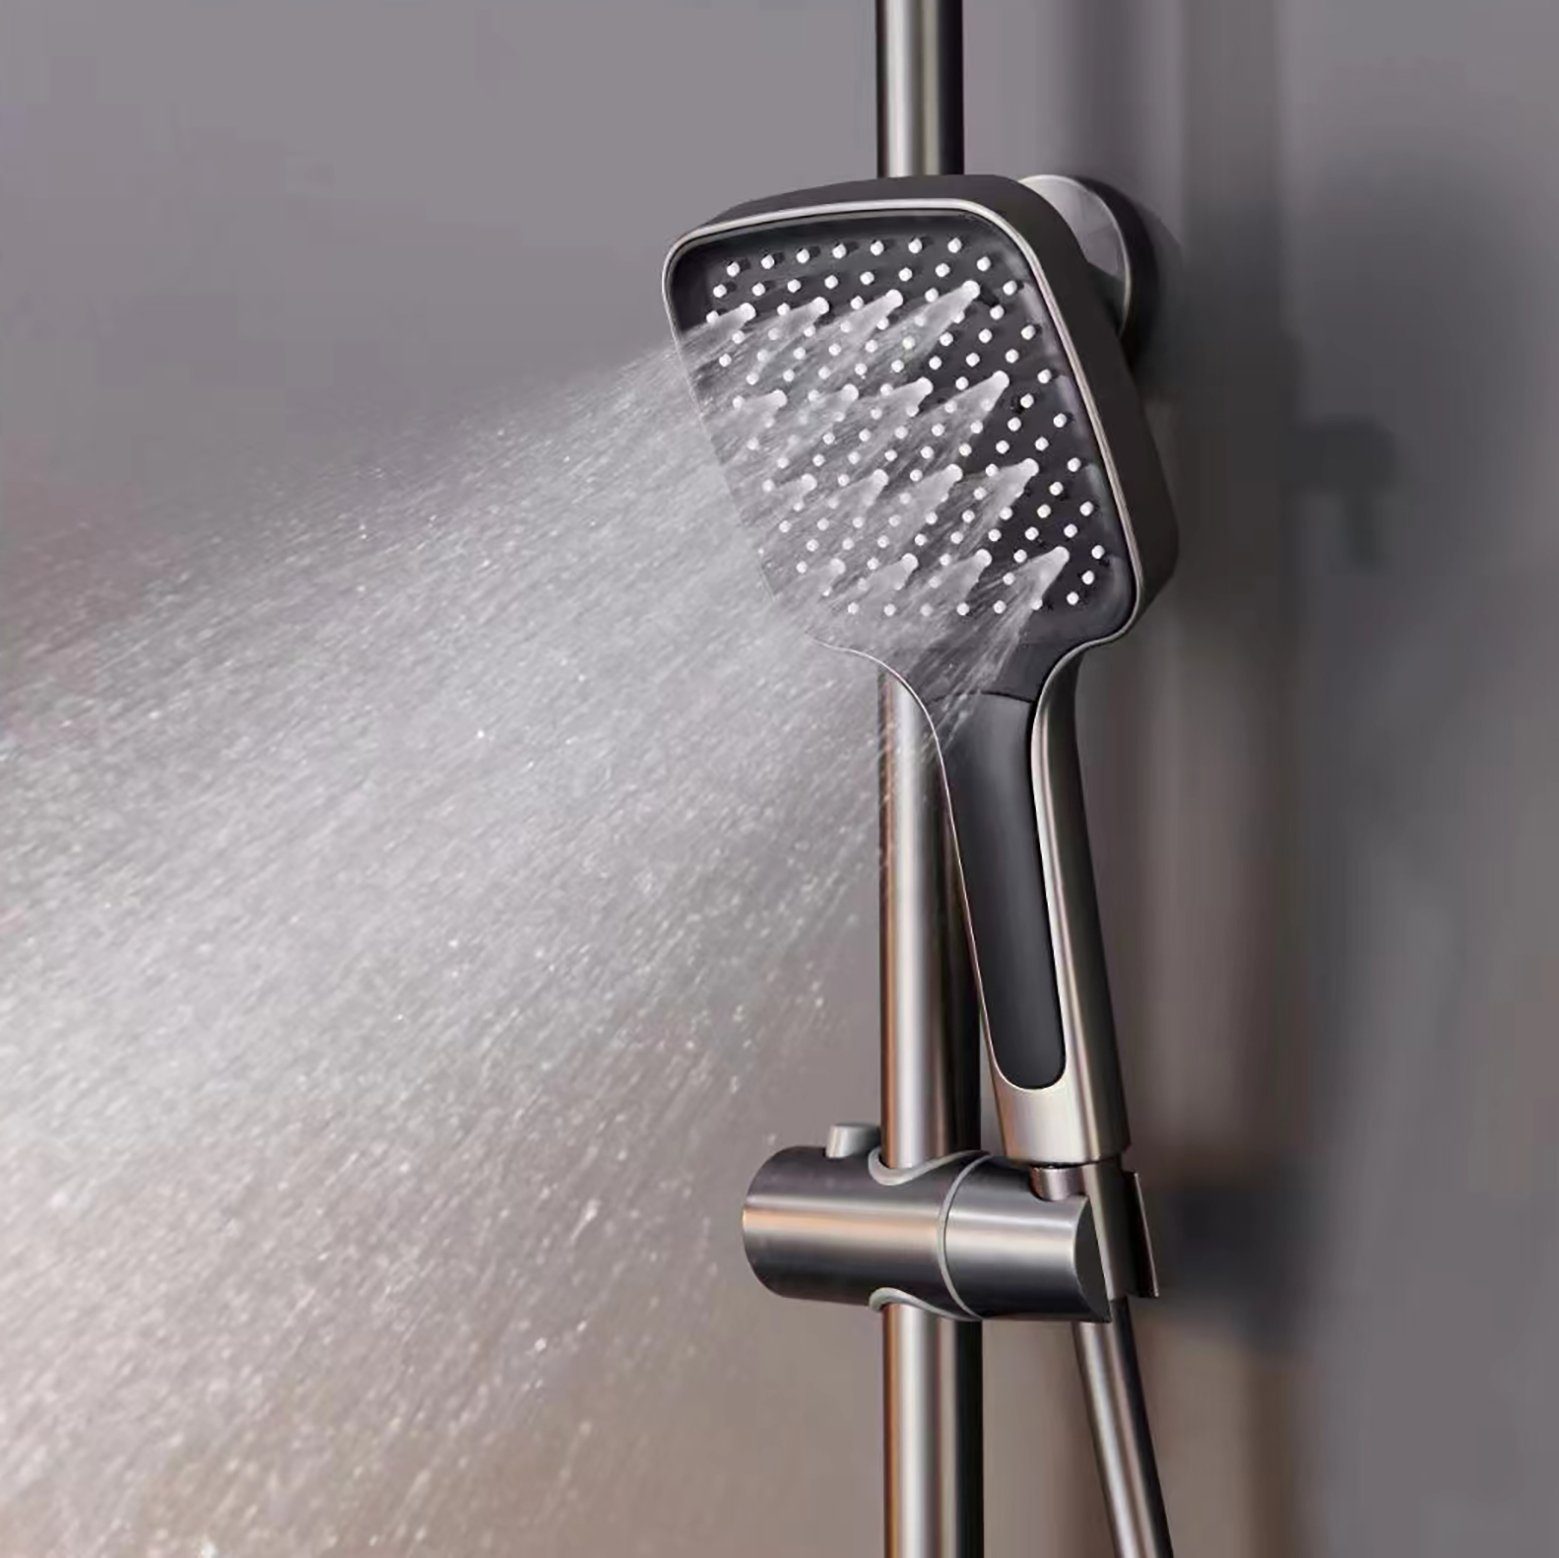 Sumerain Handbrause duschbrause mit schlauch duschkopf duschkopf, duschkopf gross), 150cm, mit Verbrühungsschutz druckerhöhend (duschschlauch